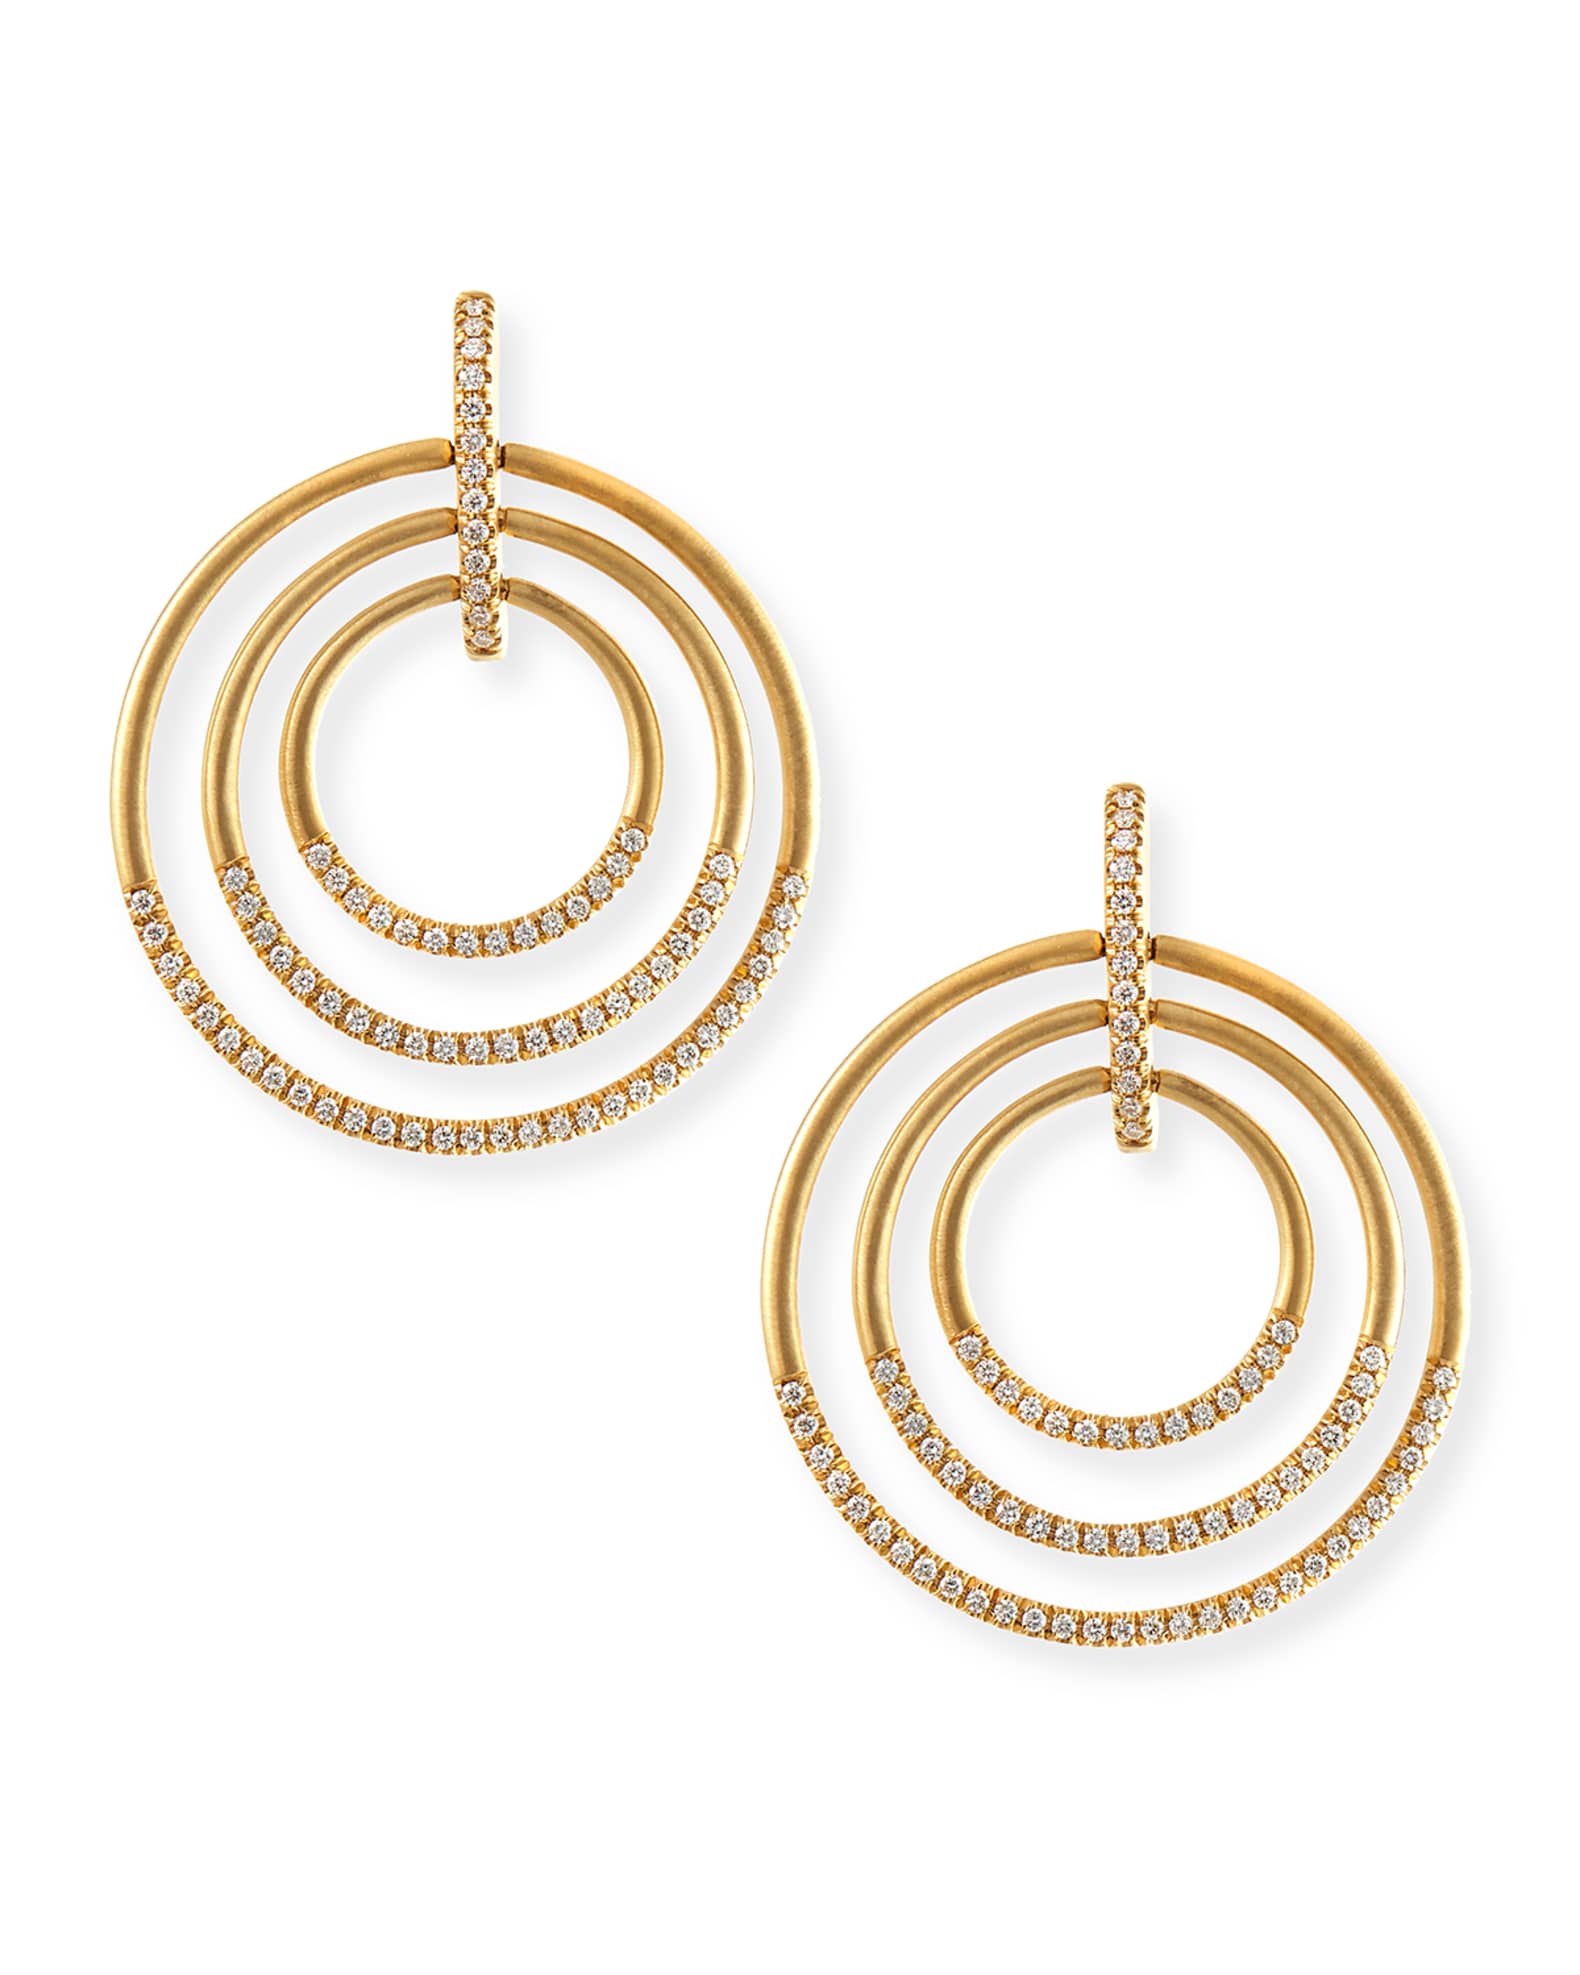 Carelle 18k Moderne 3-Ring Pave Diamond Earrings, 1 1/2